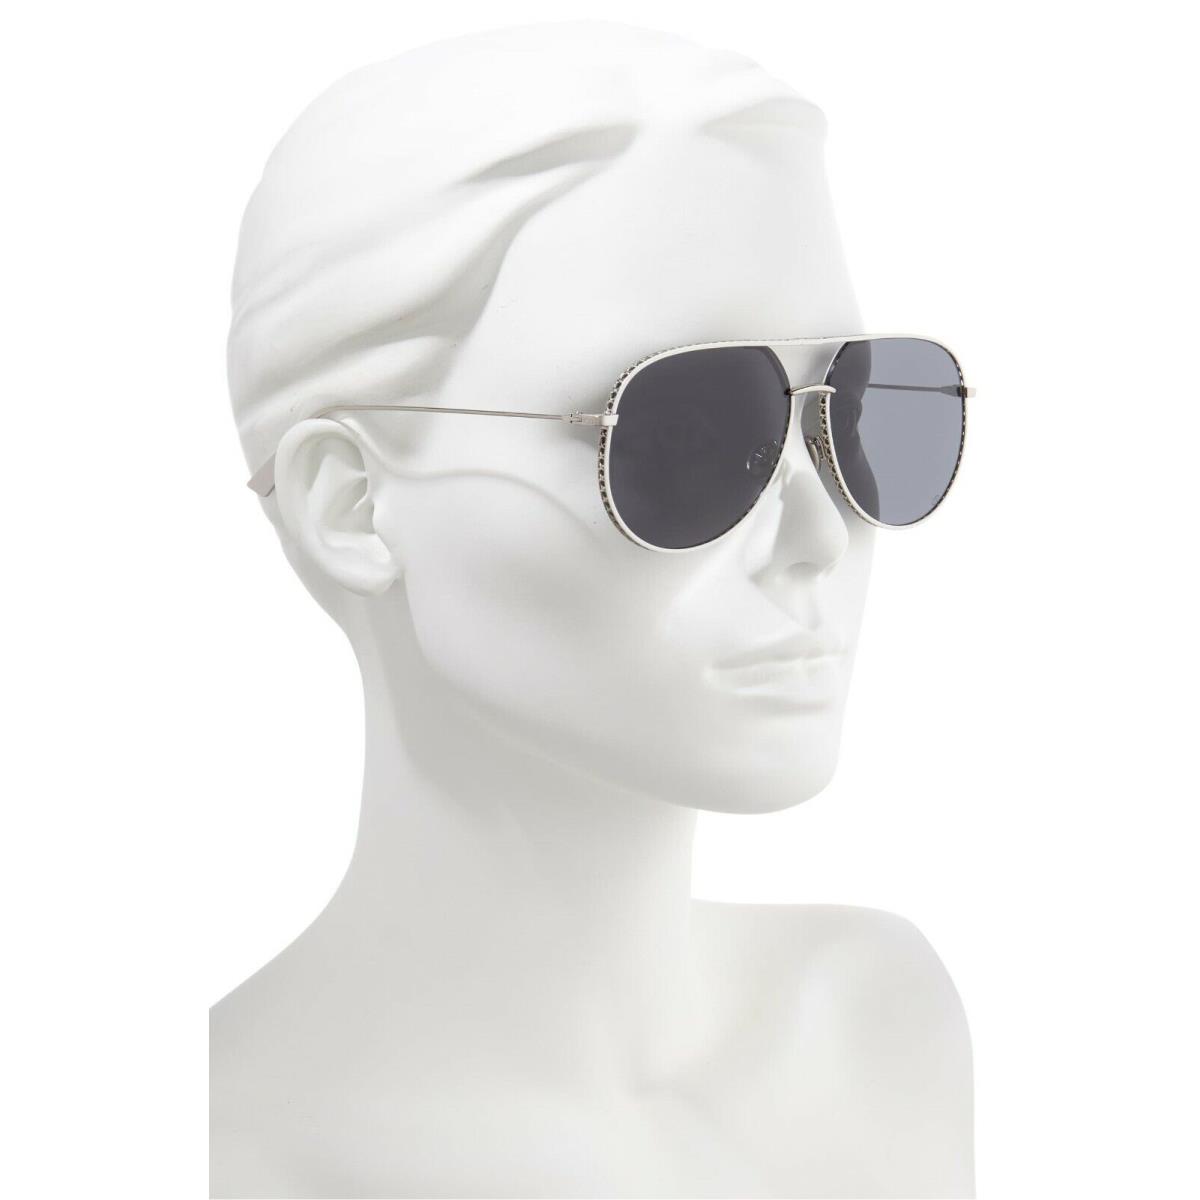 Dior sunglasses  - Gray Frame, Gray Lens 2